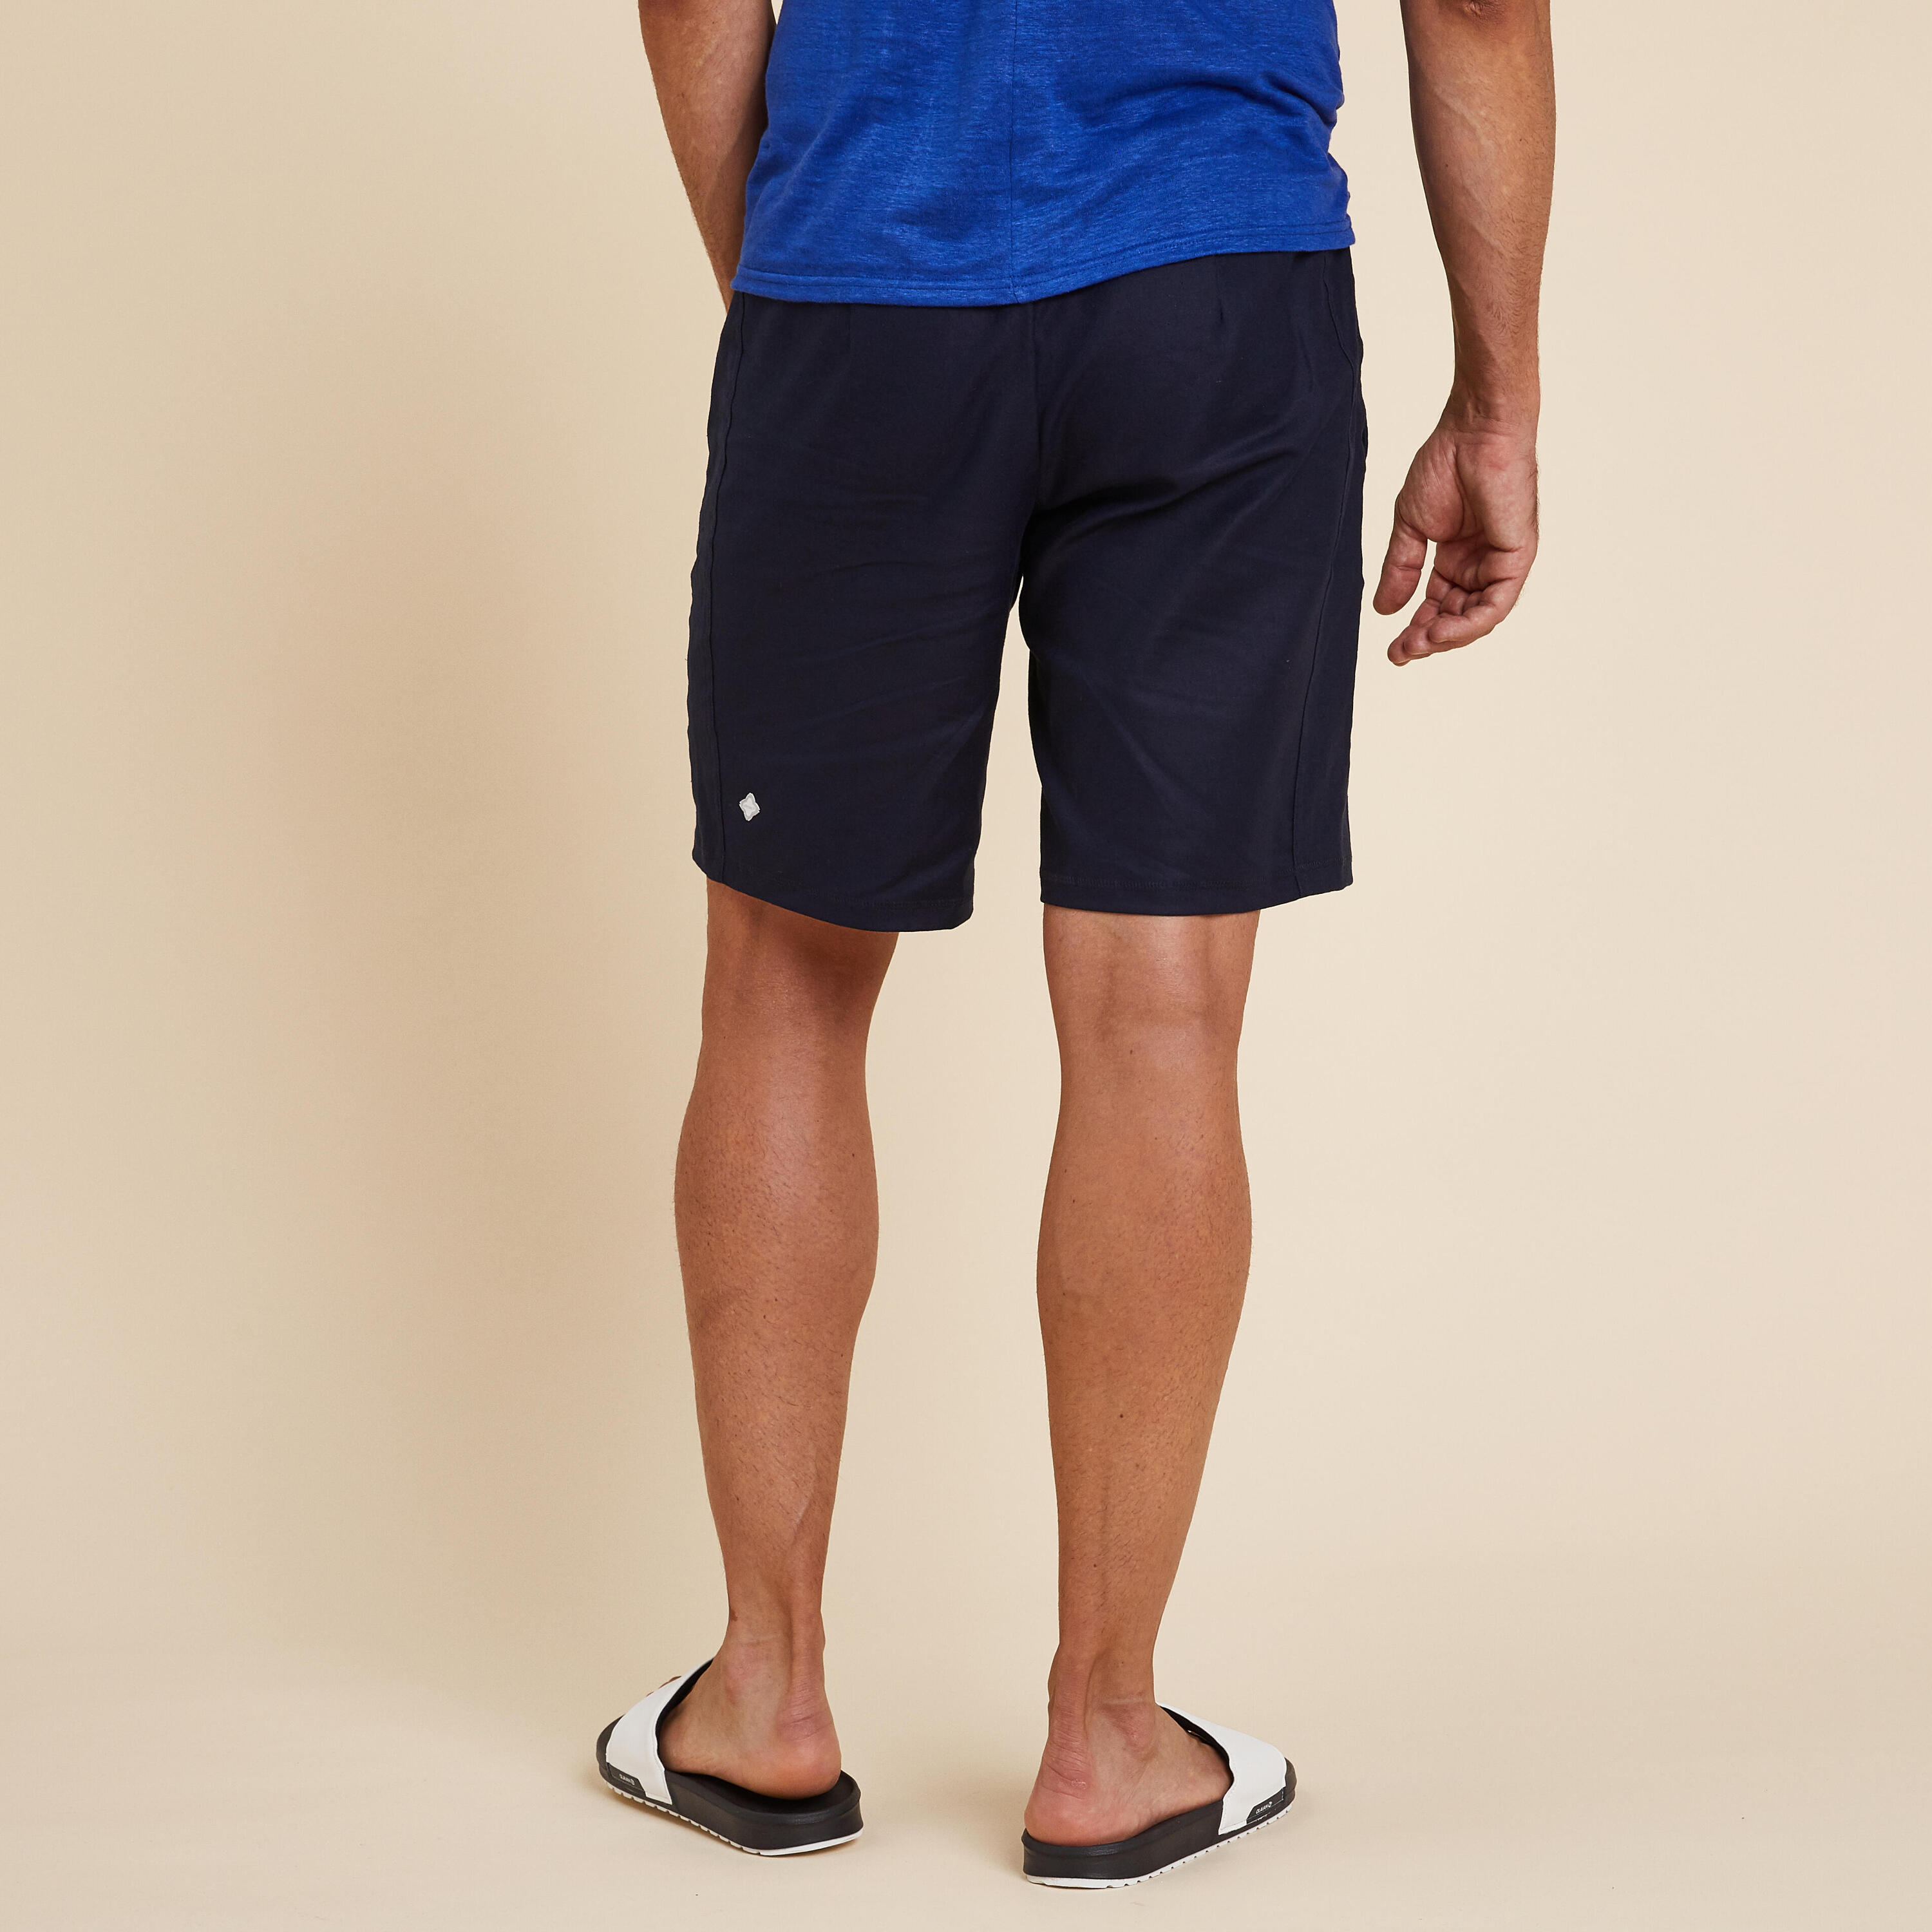 Men's Yoga Linen and Cotton Shorts - Indigo Blue 4/6